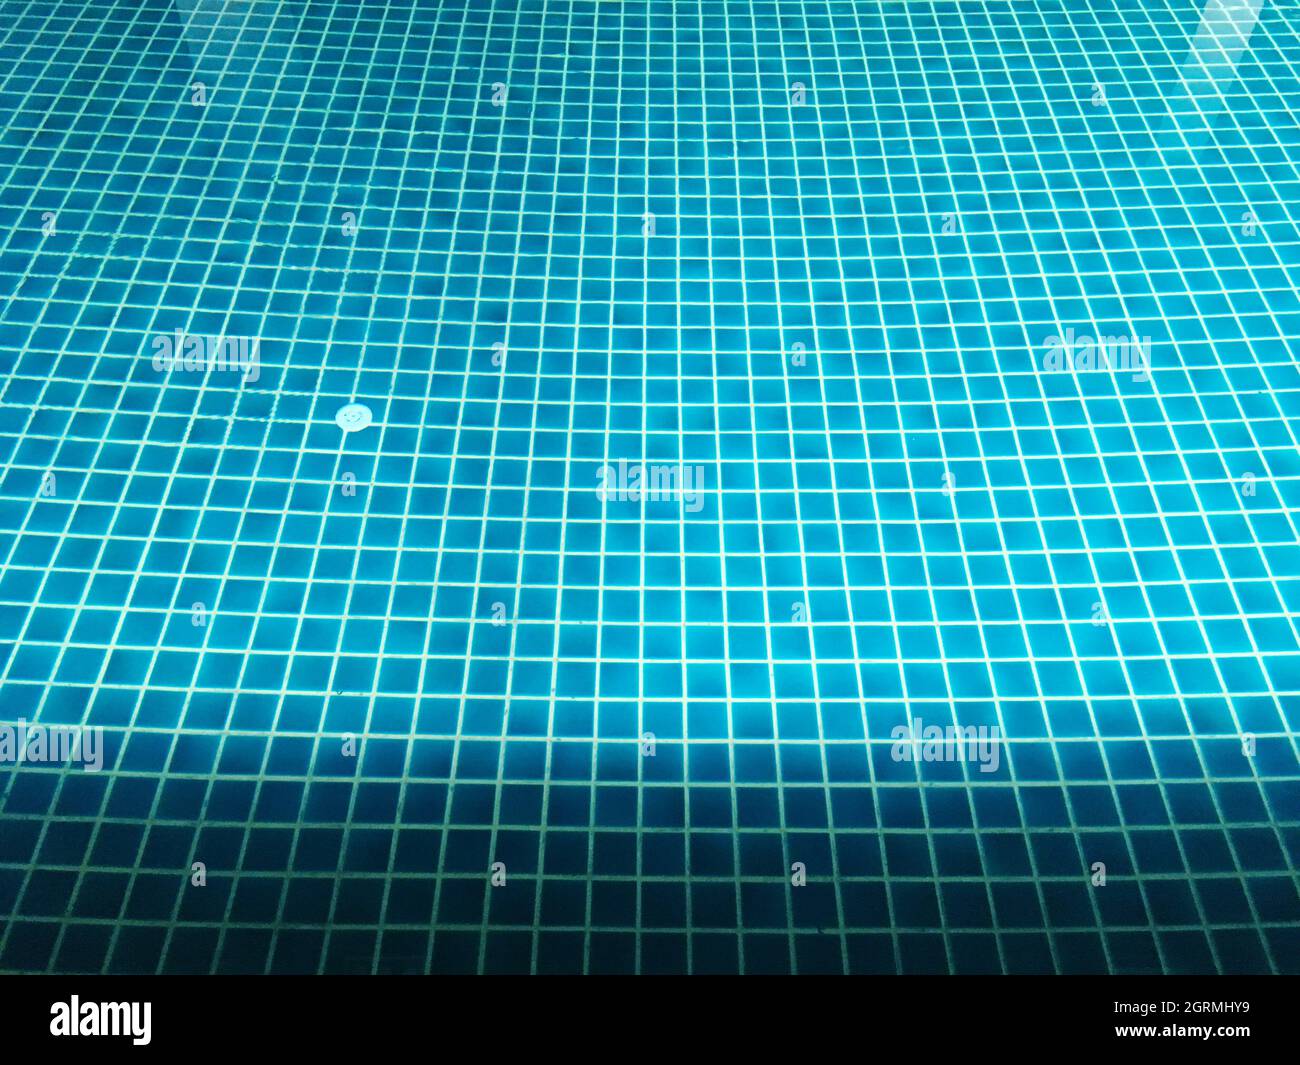 Full Frame Shot Of Swimming Pool Stock Photo